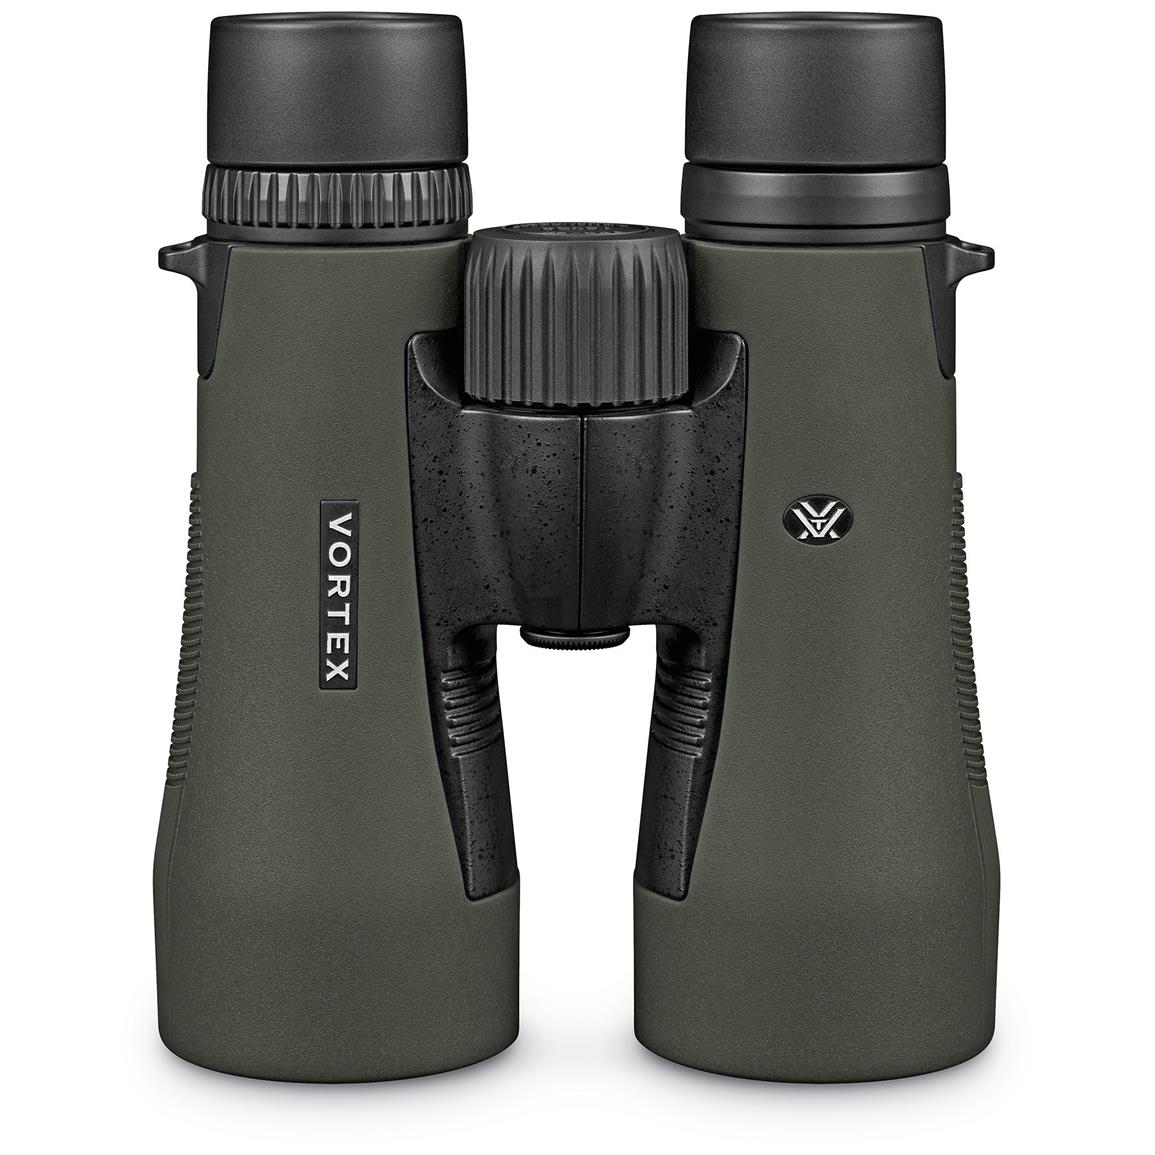 Vortex Diamondback 10x50mm Binoculars